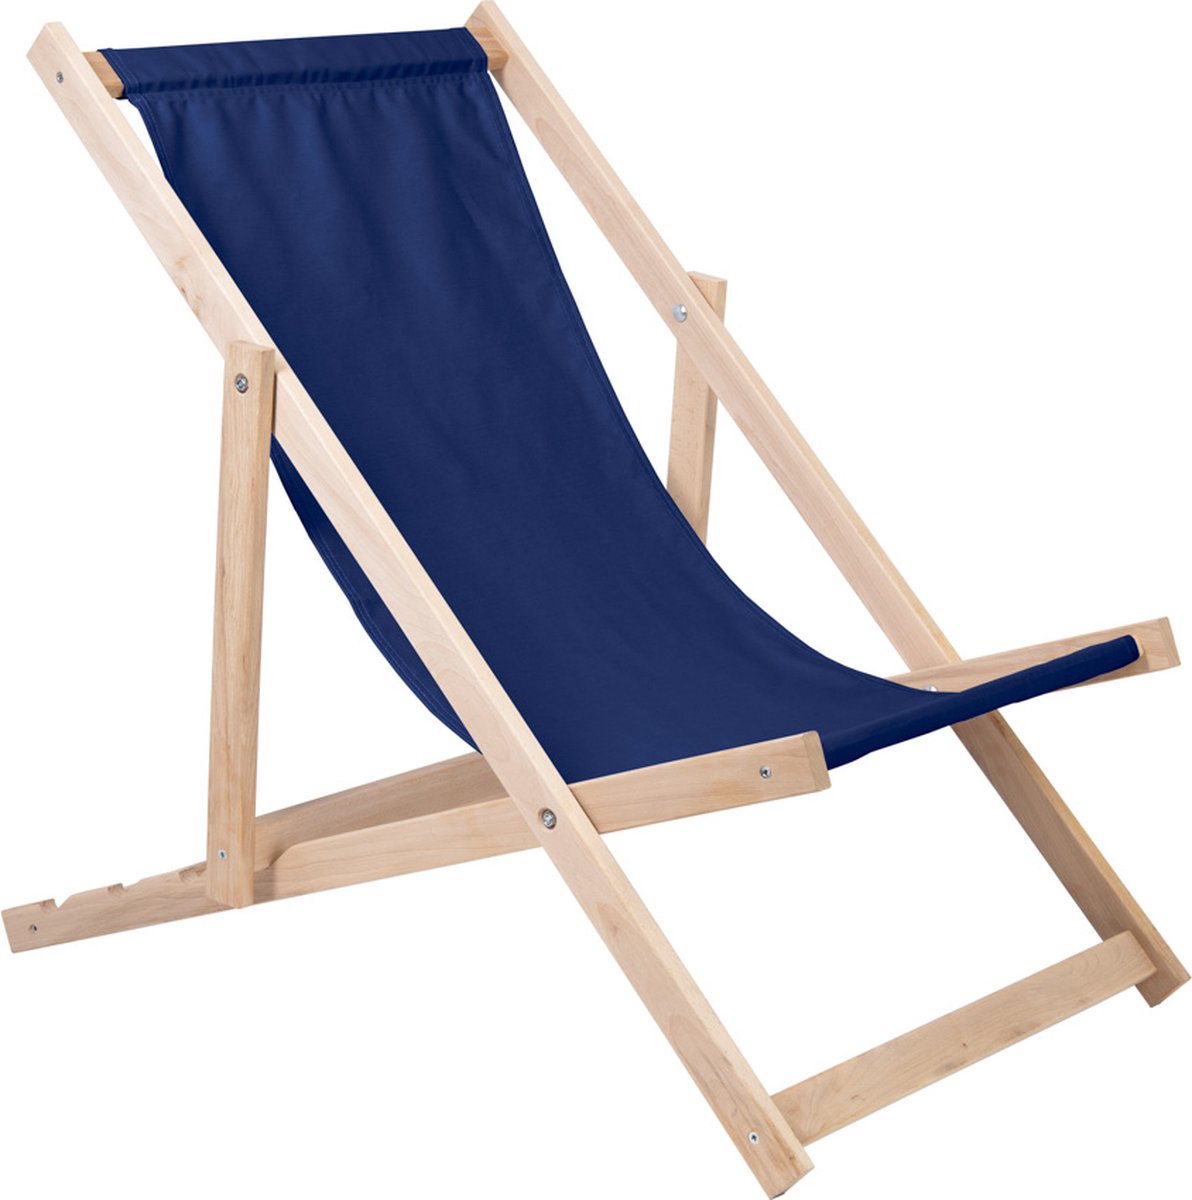 Holtaz Strandstoel Hout Inklapbaar Comfortabele Zonnebed Ligbed met verstelbare Lighoogte - blauw